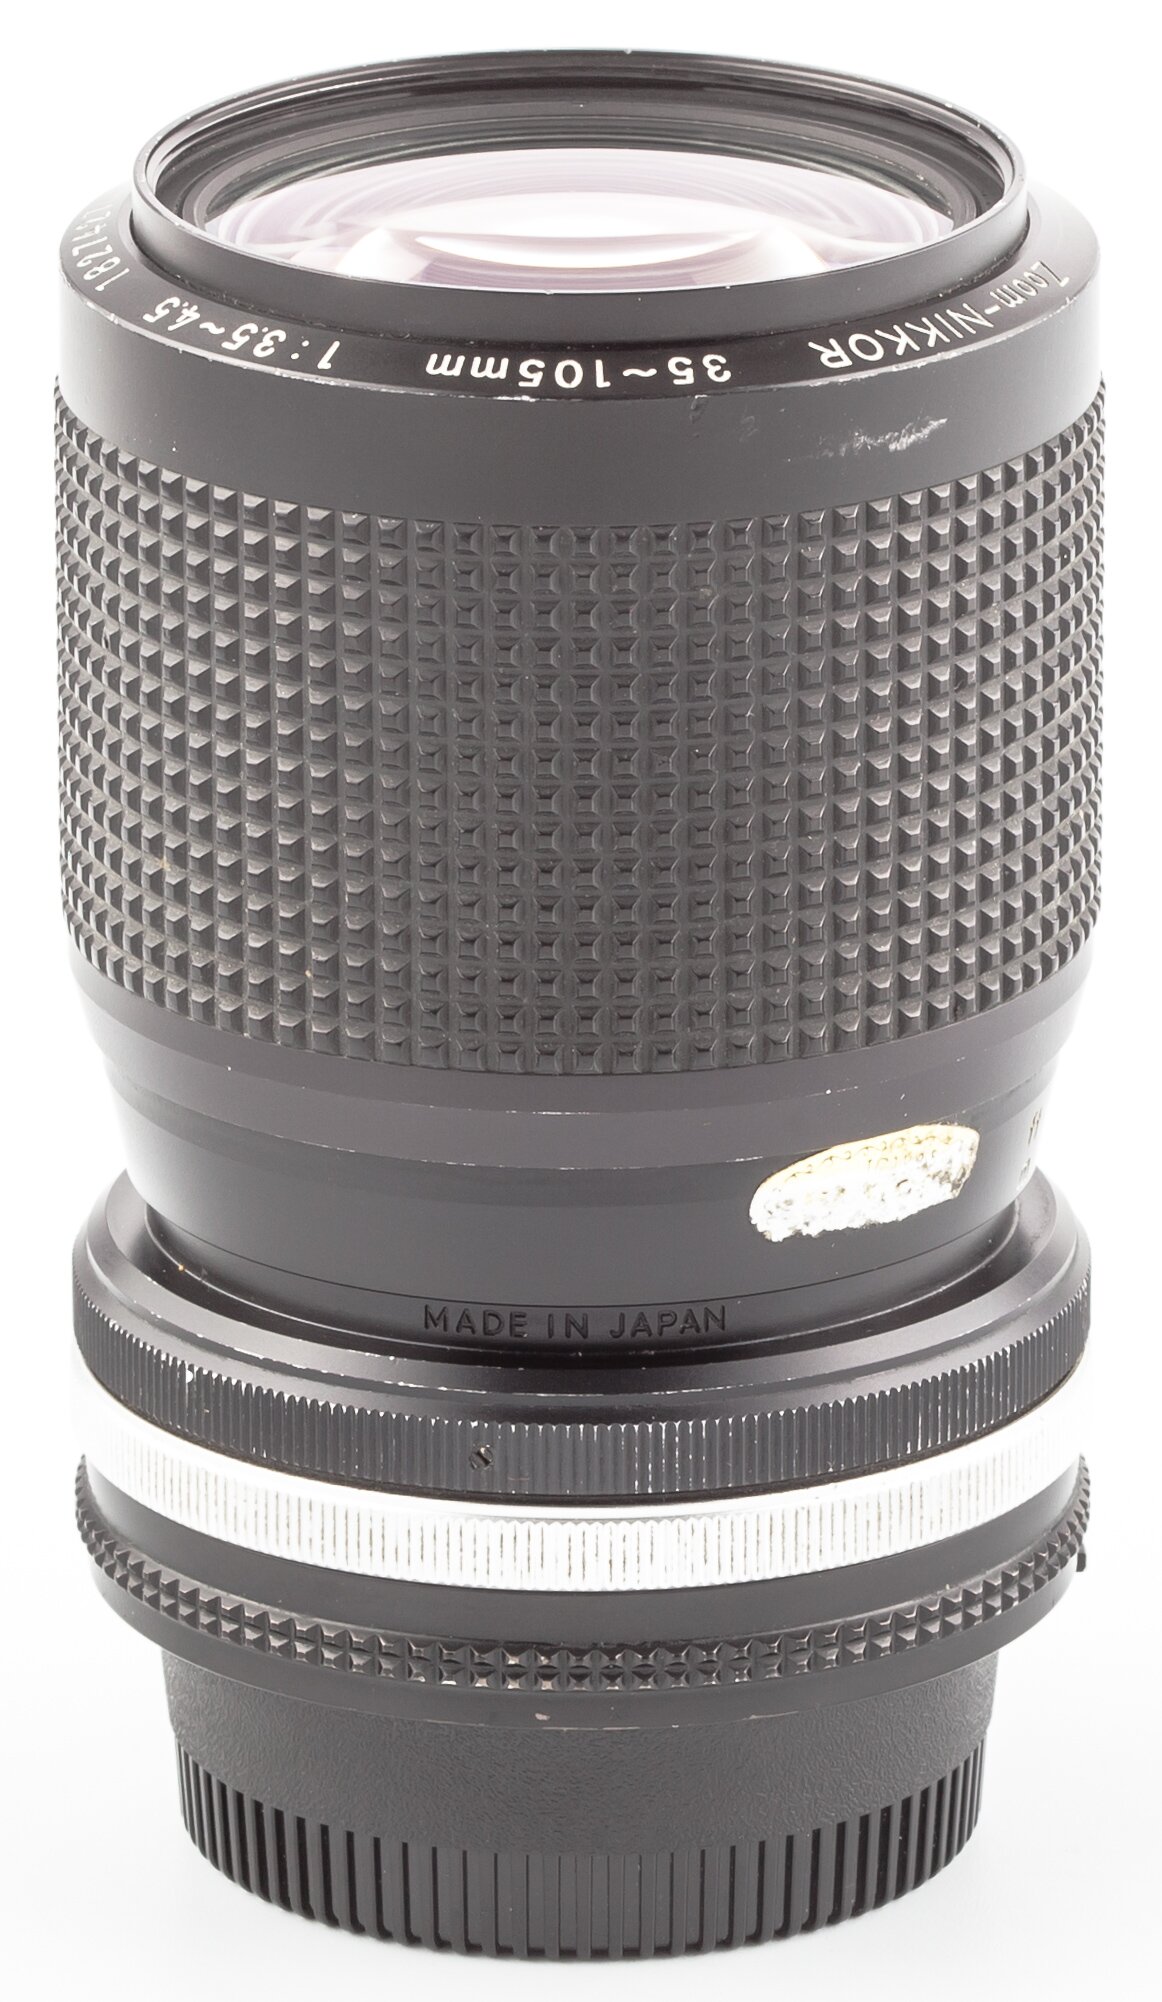 Nikon AIS Zoom-Nikkor 35-105mm 3,5-4,5